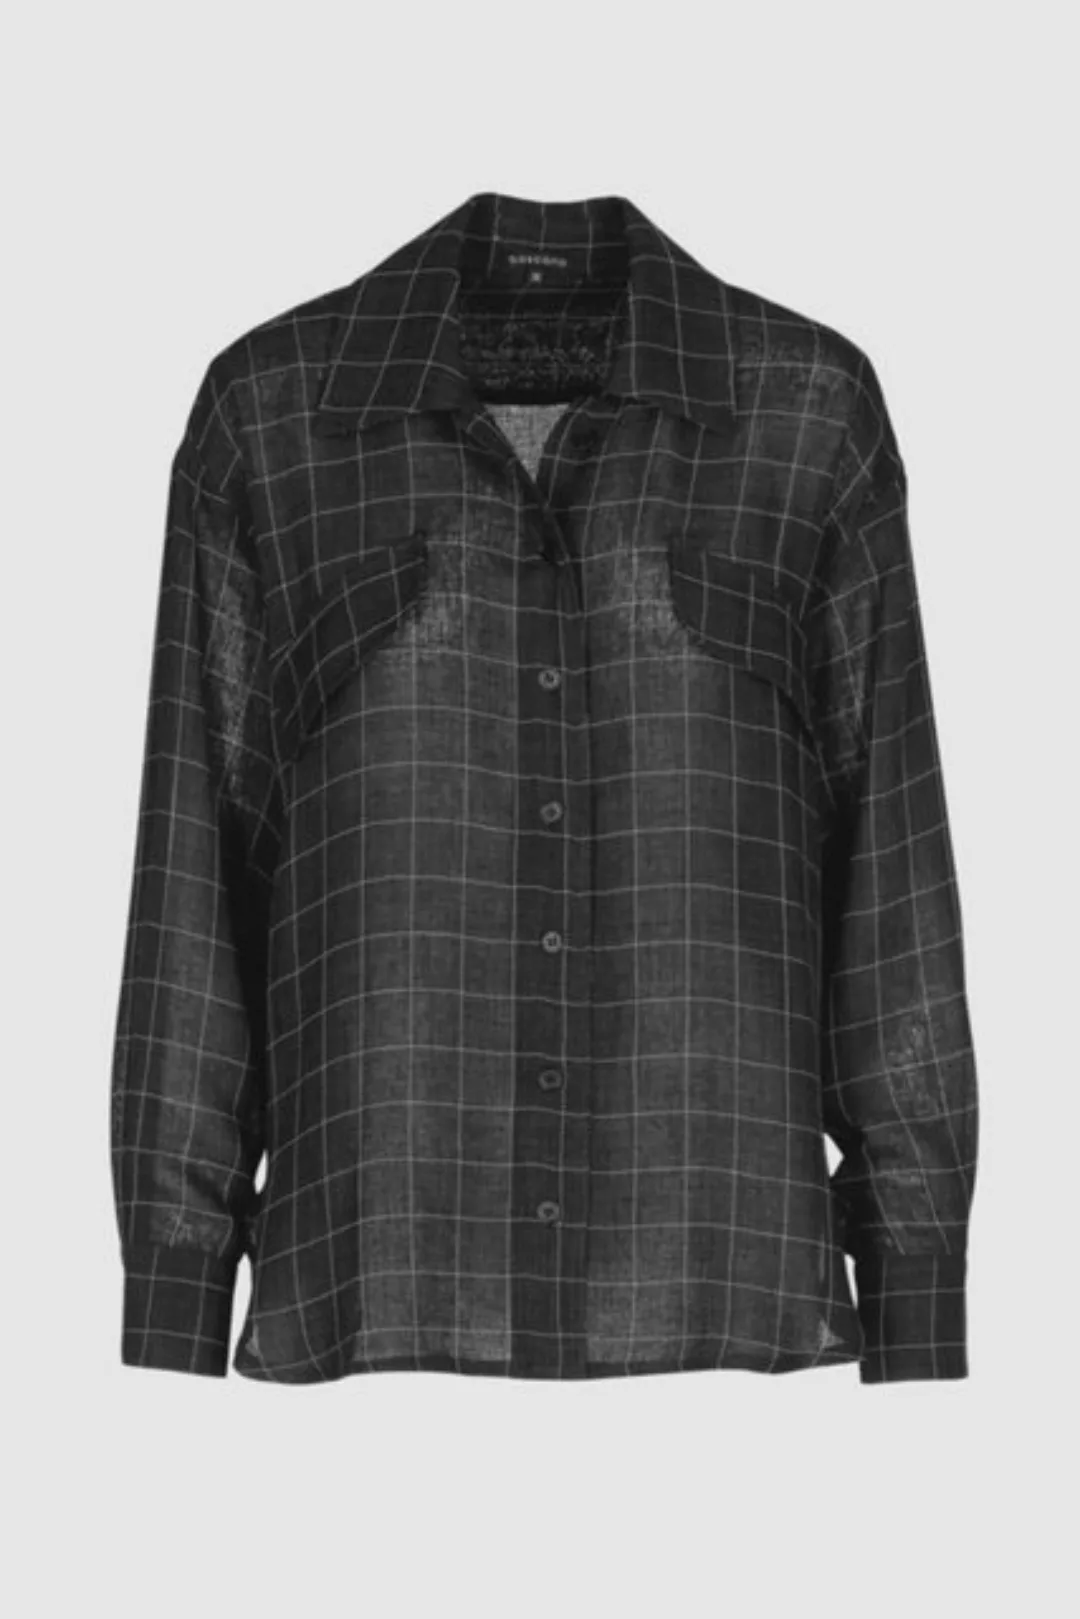 Boscana Hemdbluse Bluse mit Karo-Muster in Anthrazit günstig online kaufen